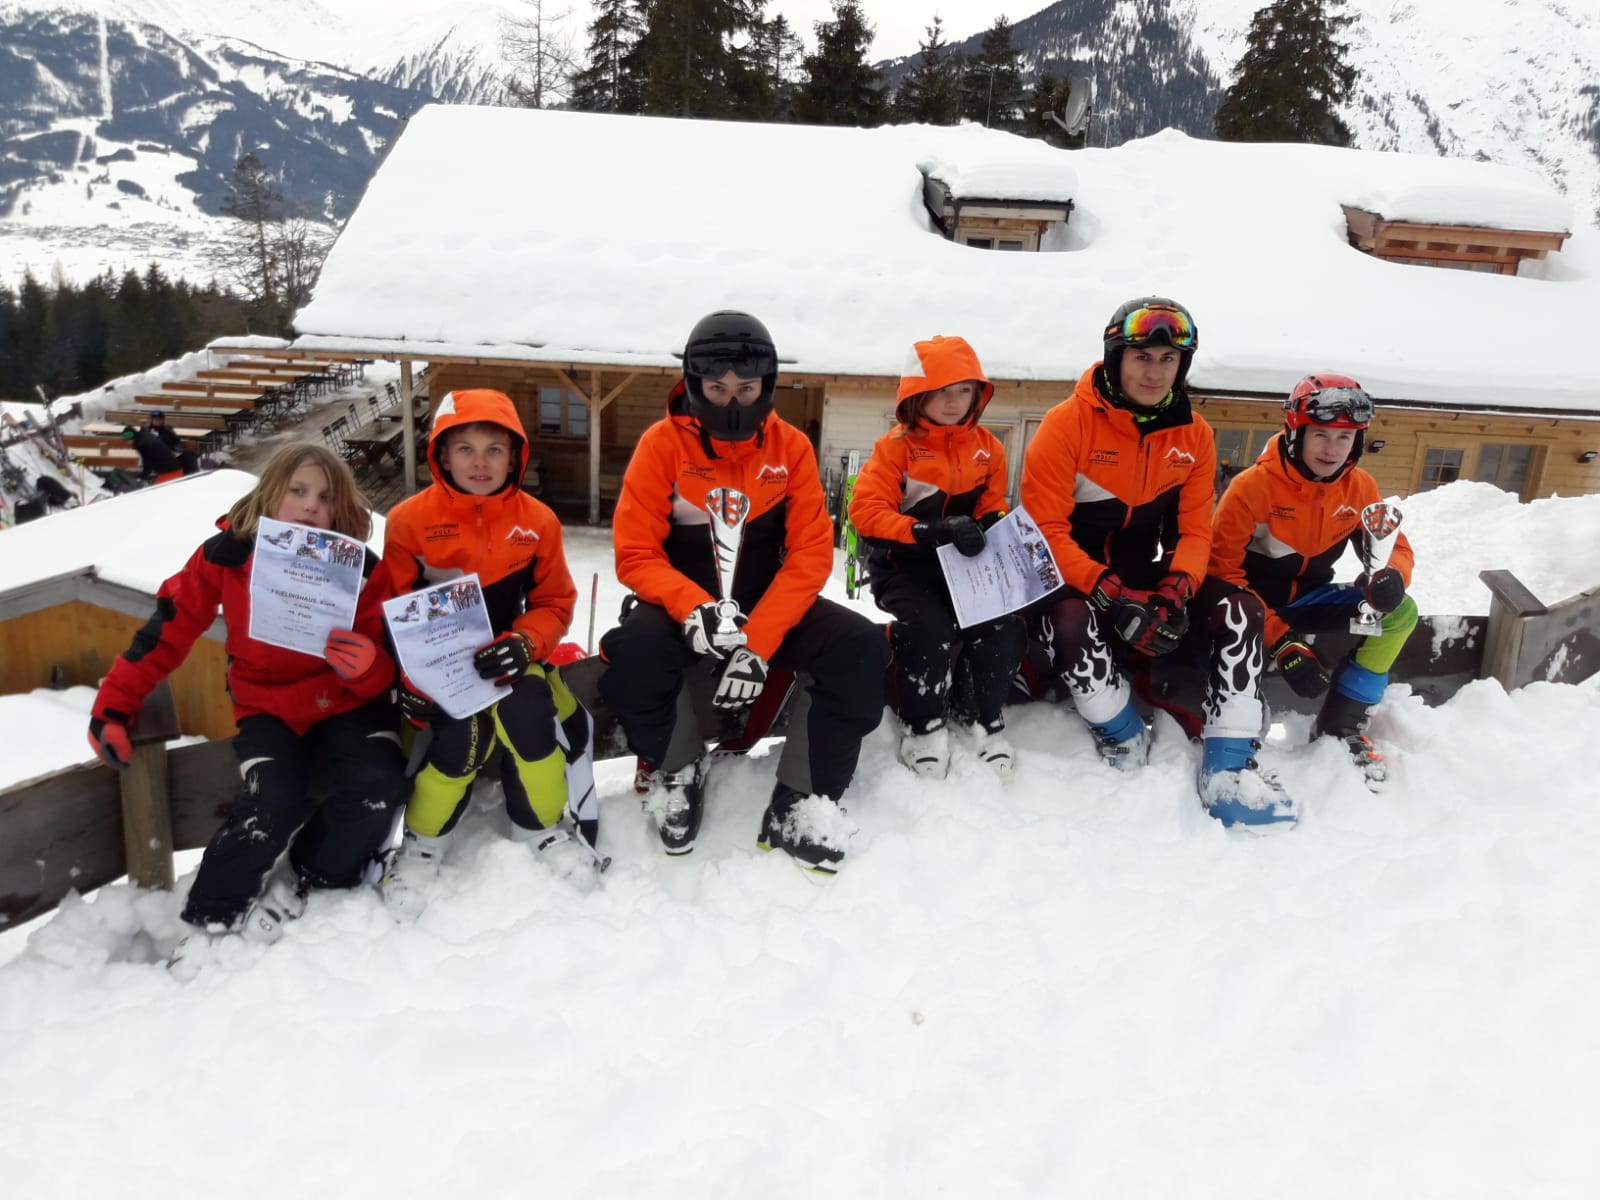 Zeigt die Skirennläufer beim Schöffen-Kids-Cup in Ehewald.